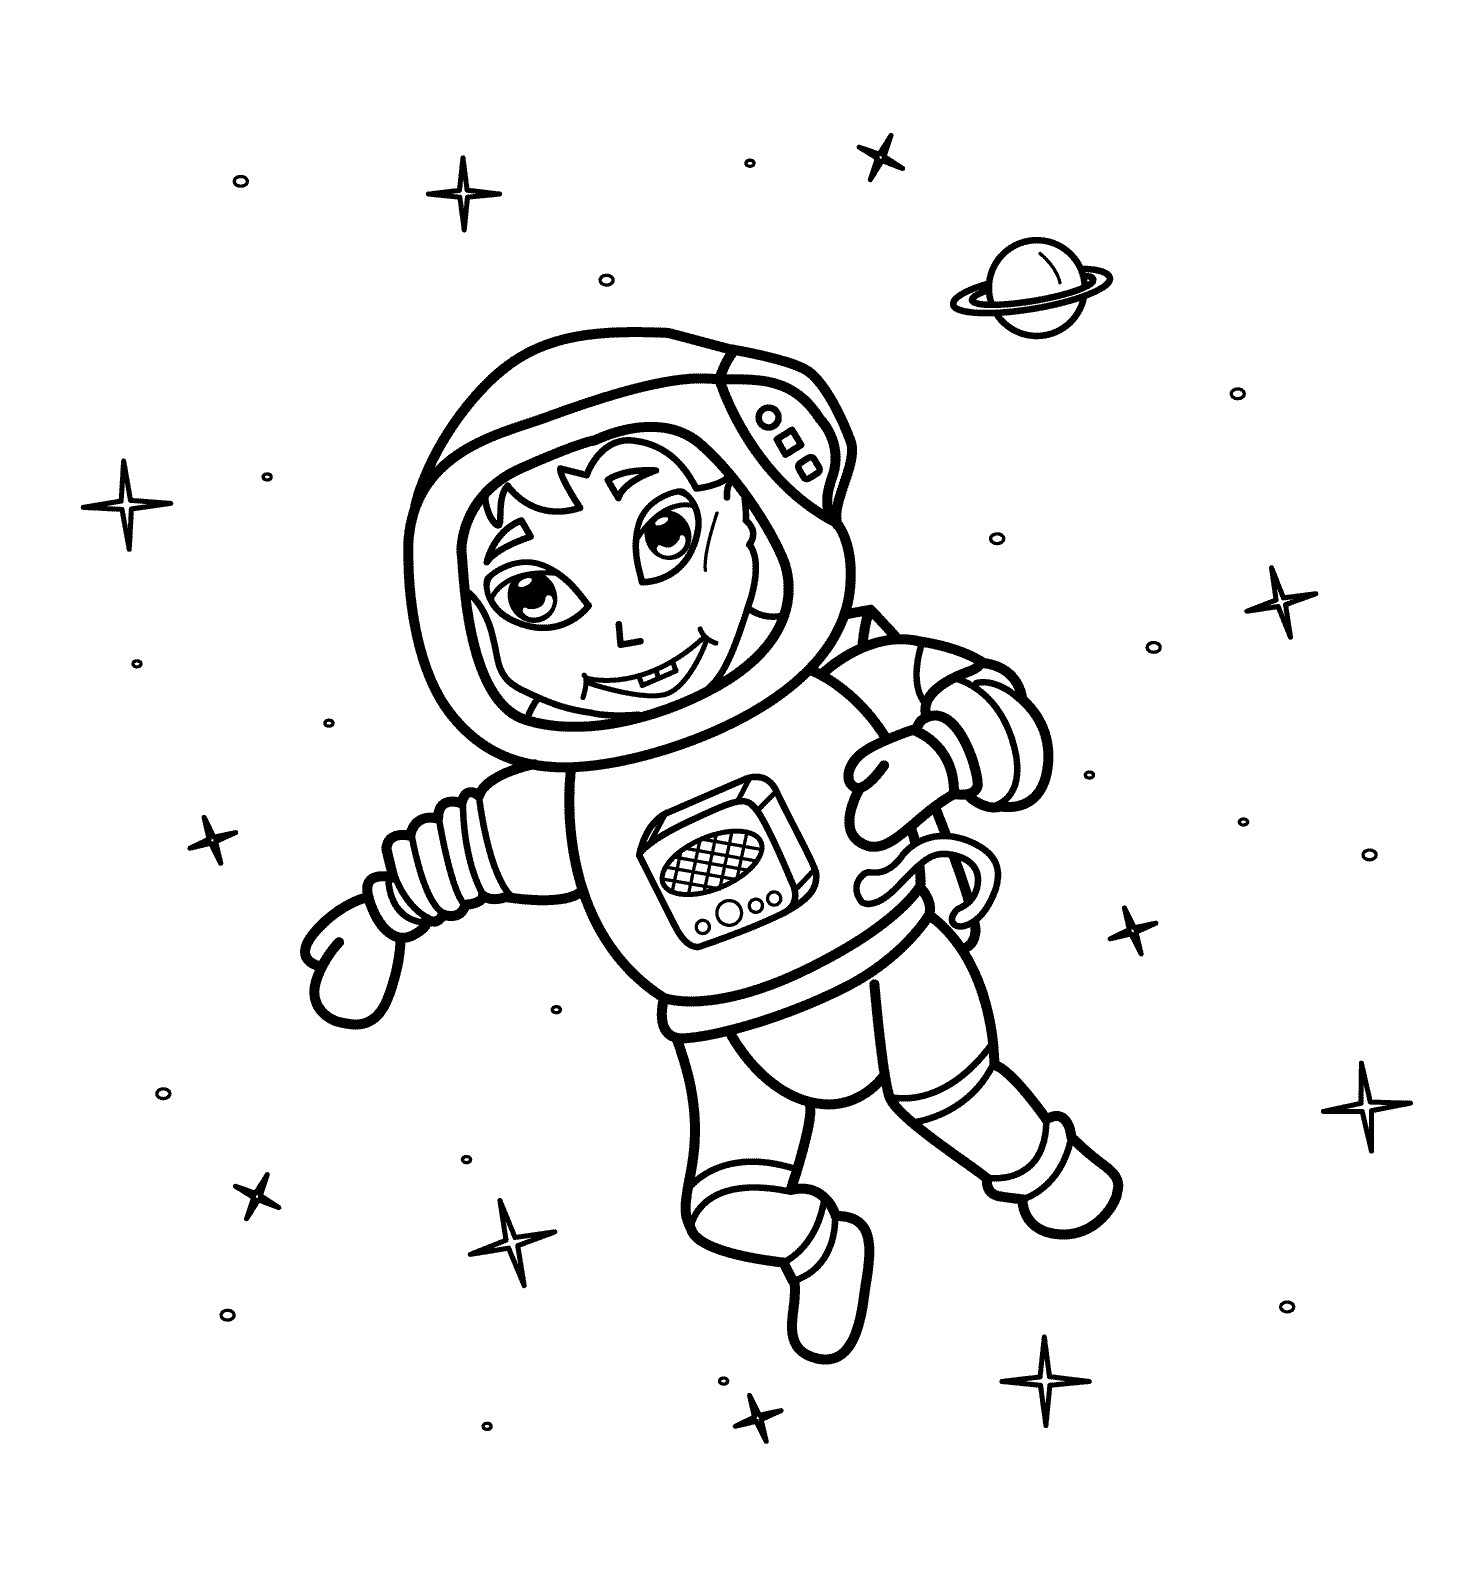 Как разукрасить космонавта. Космонавт раскраска для детей. Космос раскраска для детей. Раскраска про космос и Космонавтов для детей. Космонавт для раскрашивания для детей.